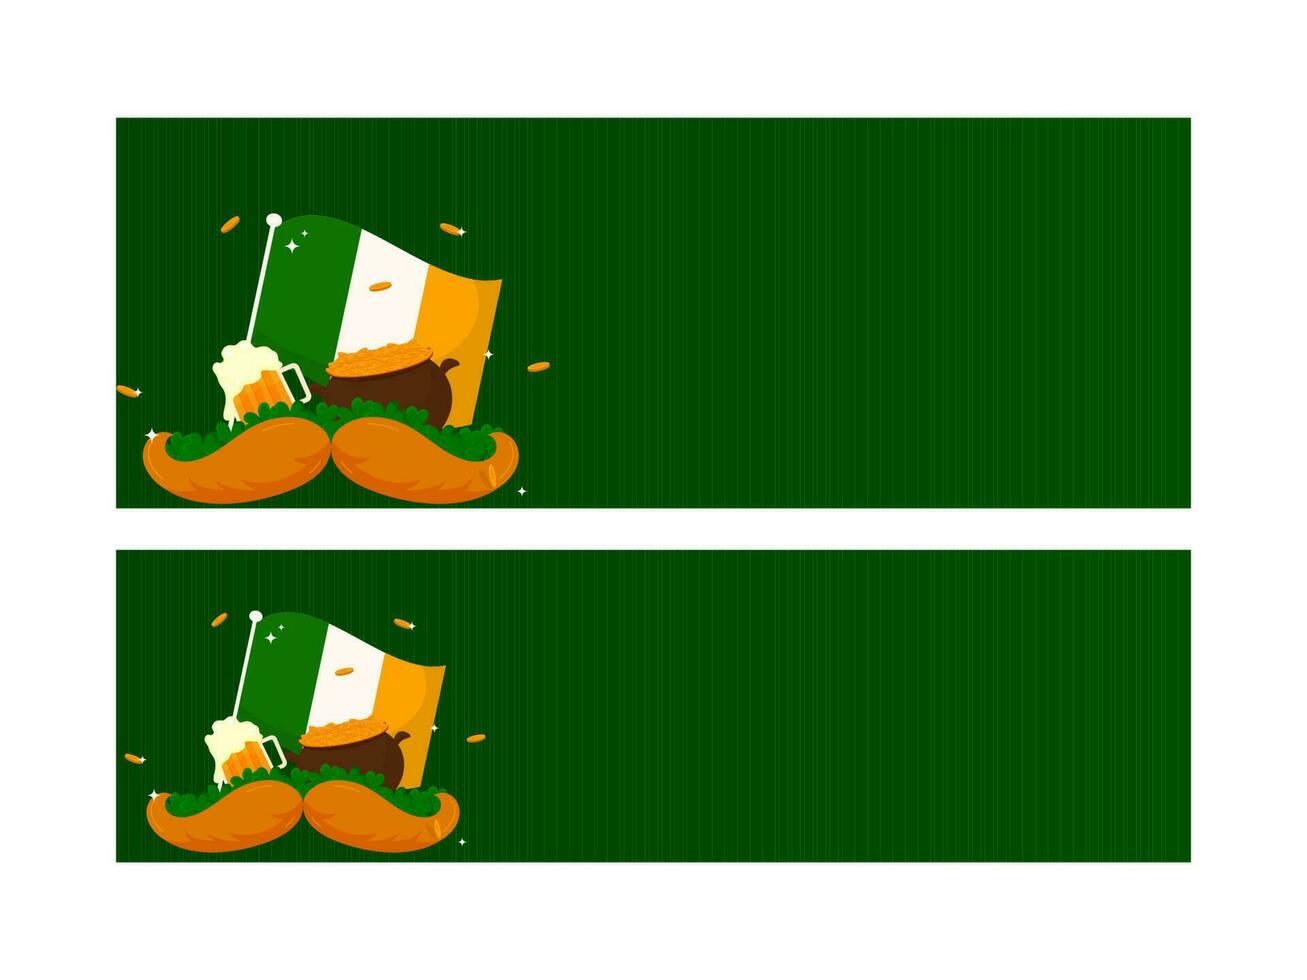 grön rubrik eller baner design med irländsk flagga, öl mugg, vitklöver löv, mustasch och skatt pott i två alternativ. vektor